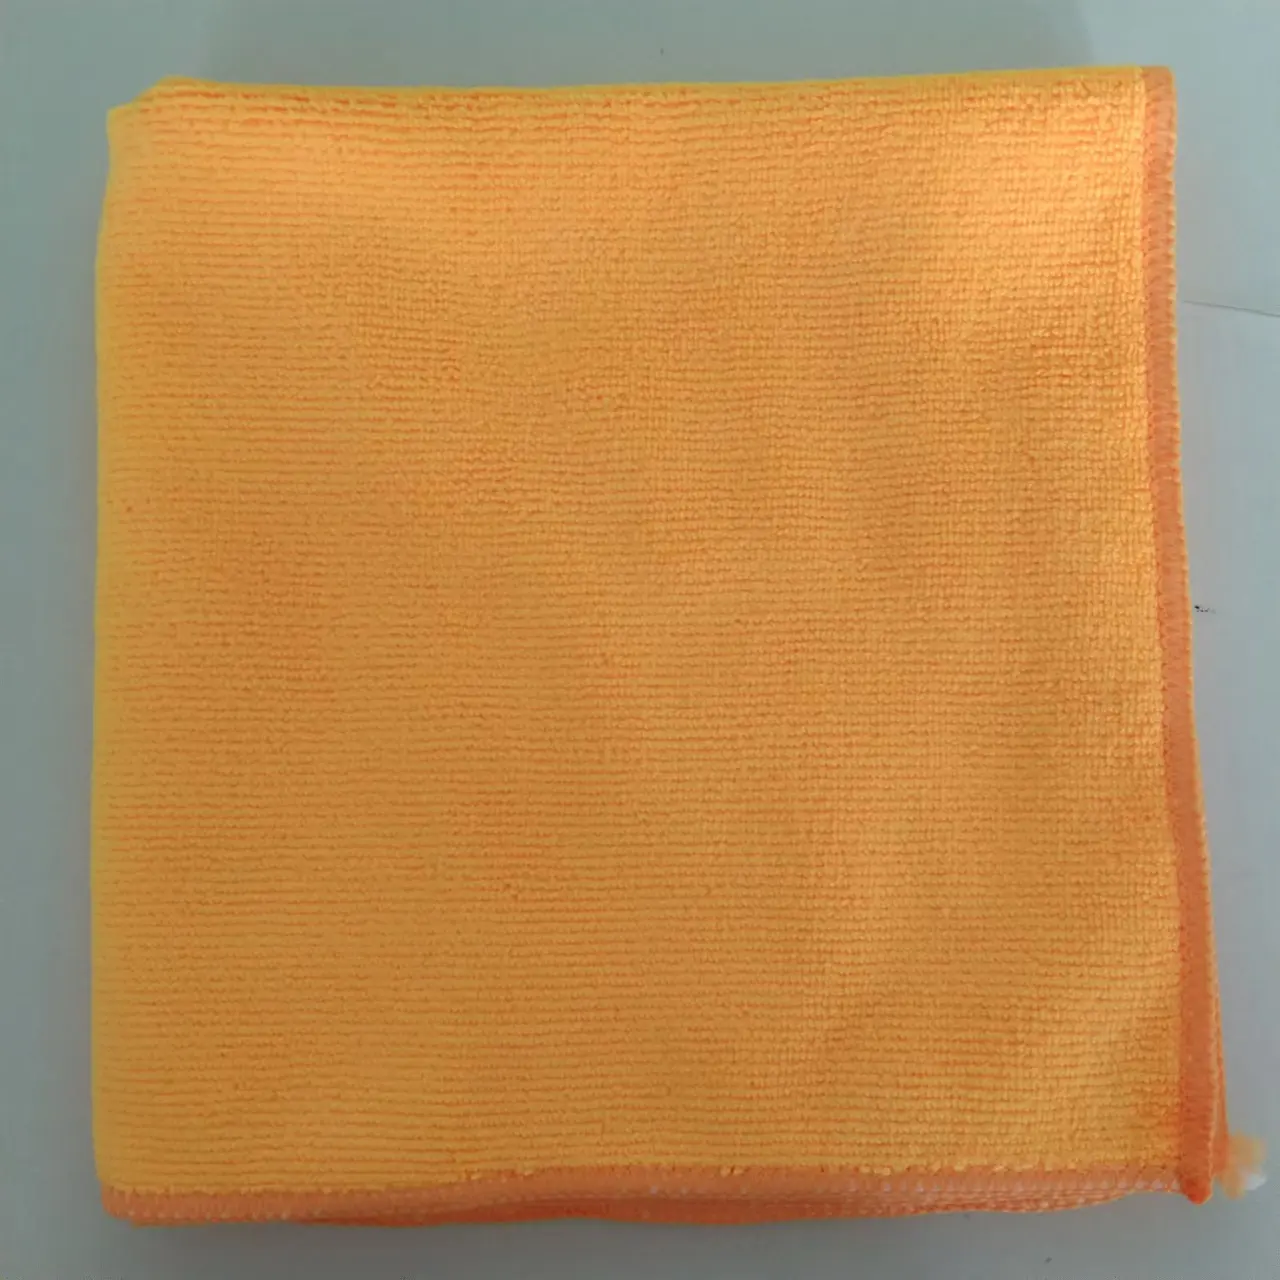 80 Polyester 20 Polyamide Absorption d'Eau Microfibre Nettoyage Lavage de Voiture Chiffons Vaisselle Serviette de Cuisine Chiffon de Nettoyage en Microfibre